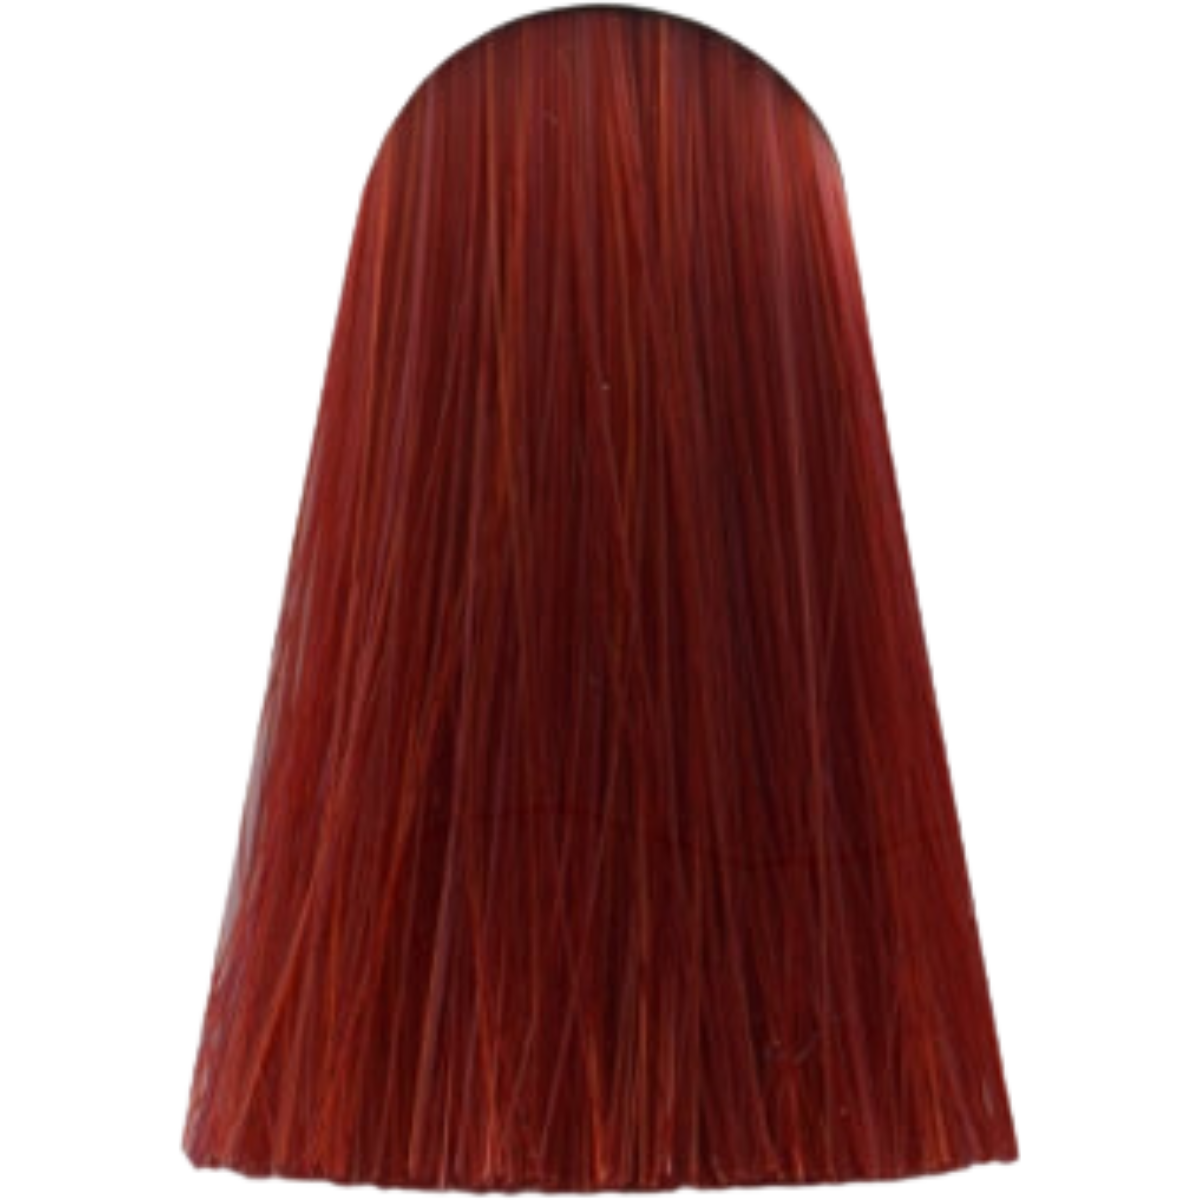 צבע לשיער מיקס 0.66 CREATOR INTENSE RED אינדולה INDOLA צבע לשיער 60 גרם